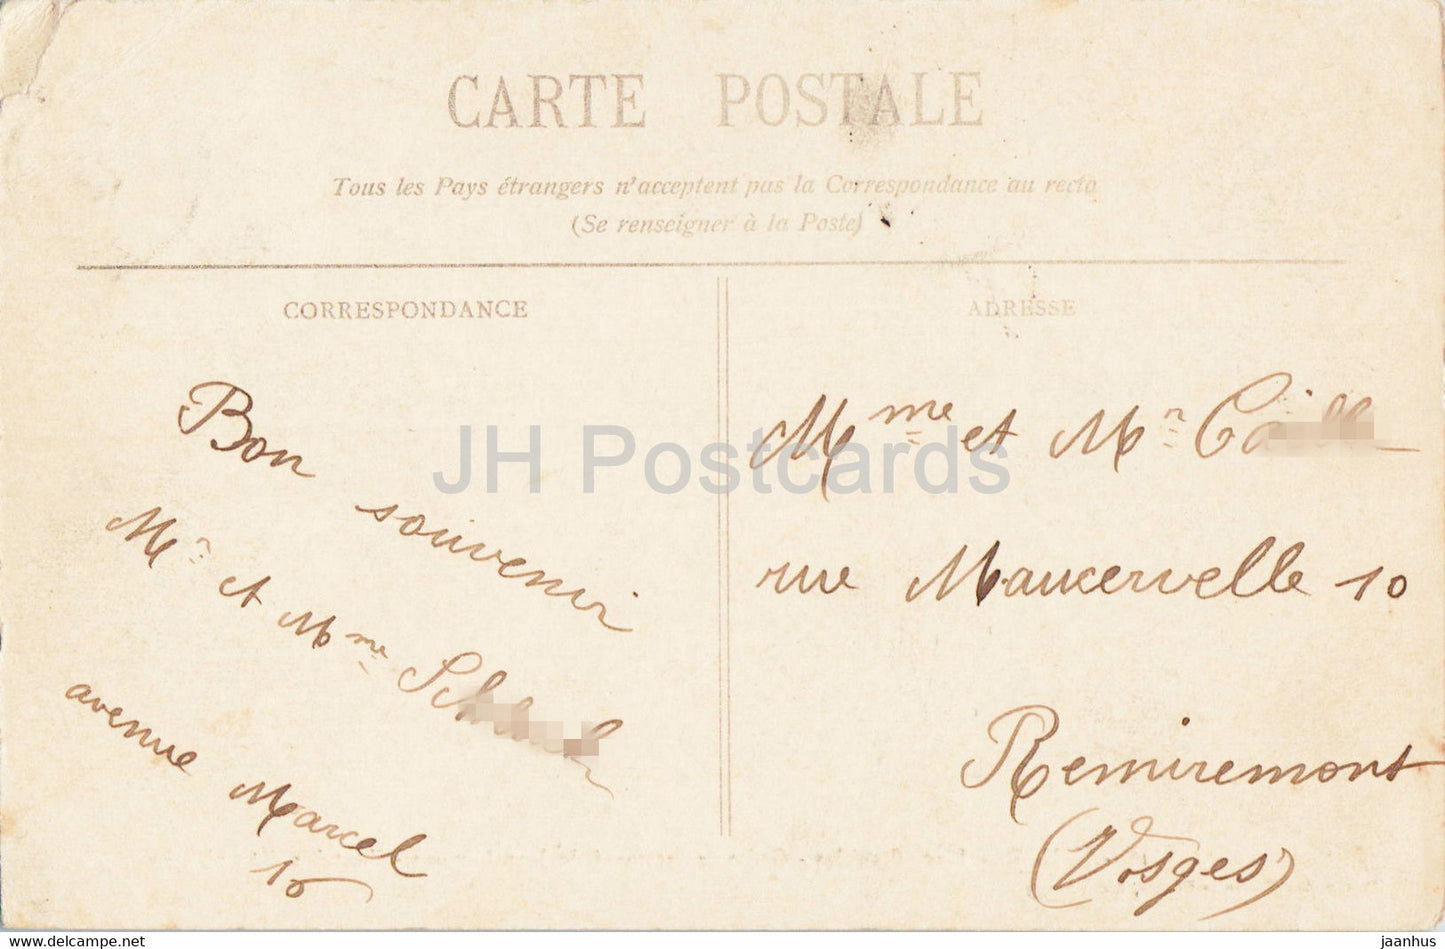 Nancy - Place Stanislas - Grille en fer forge de Jean Lamour - Fontaine d'Amphitrite  - 18 old postcard - France - used